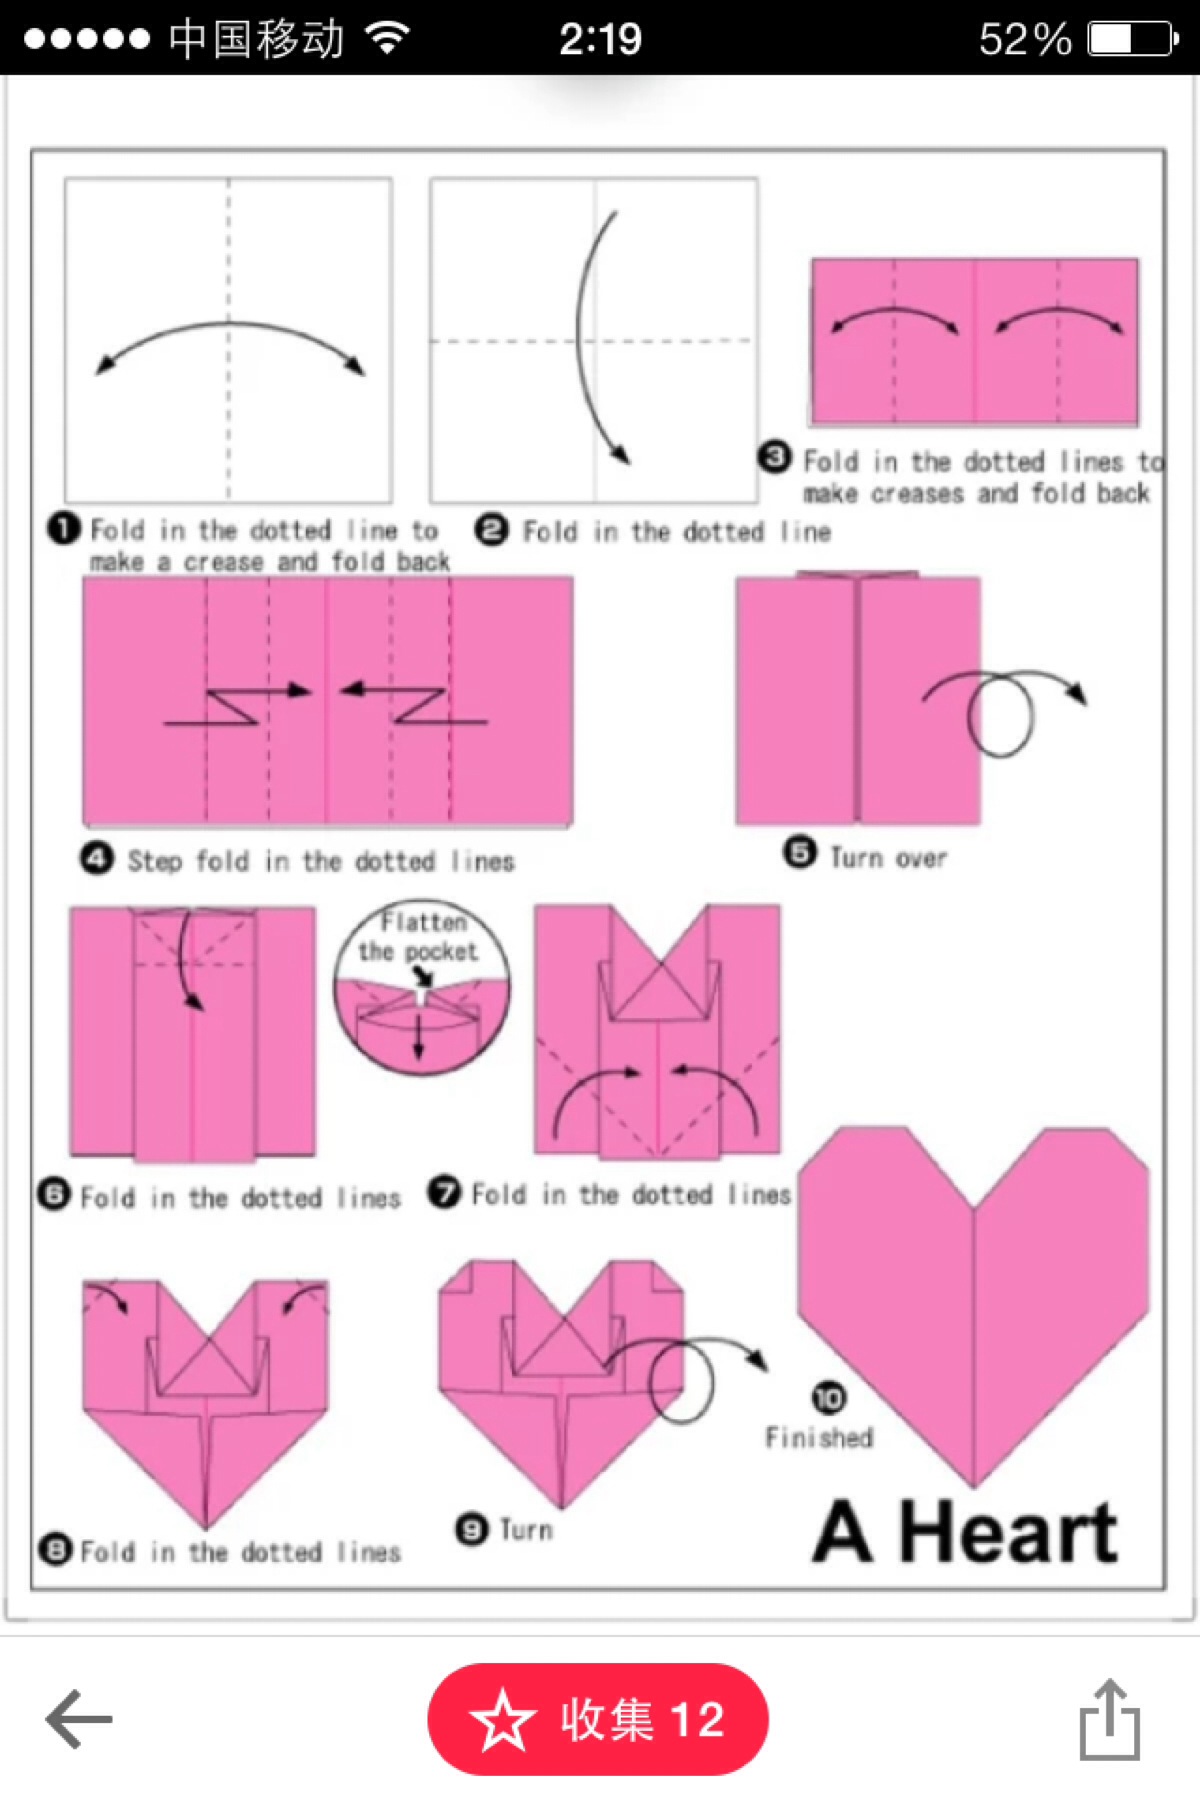 叠纸爱心的方法图解图片